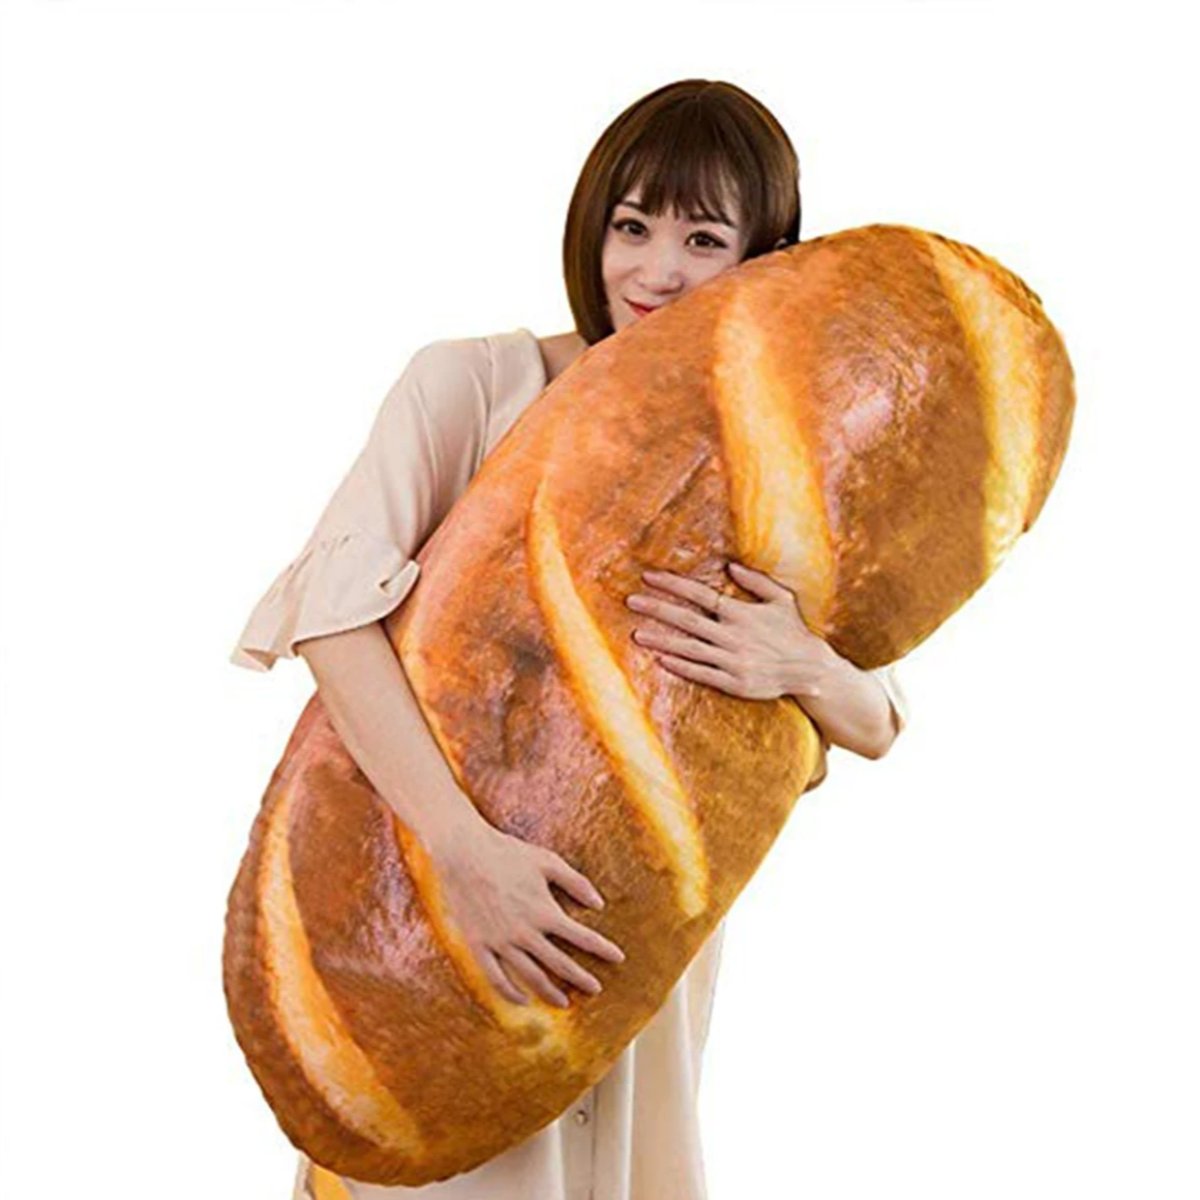 Pão gigante almofada de pelúcia macia brinquedo travesseiro